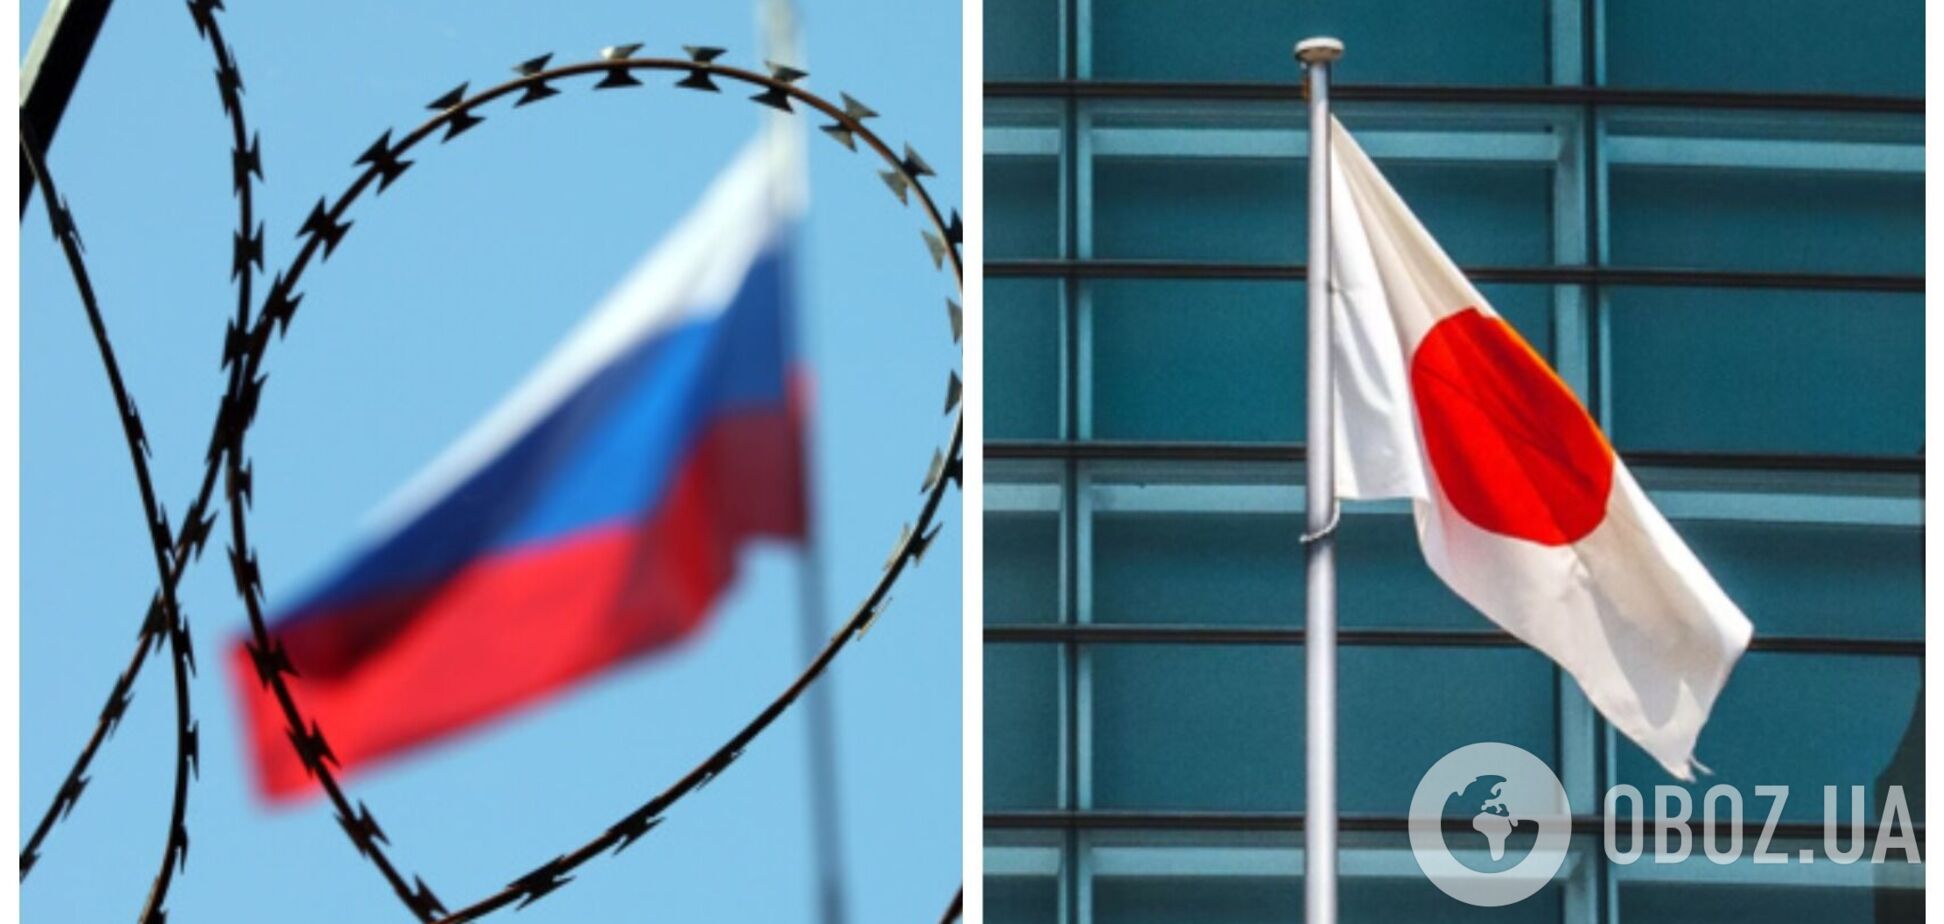 Японія заборонила експорт до РФ і Білорусі понад 300 товарів та технологій – Japan Today